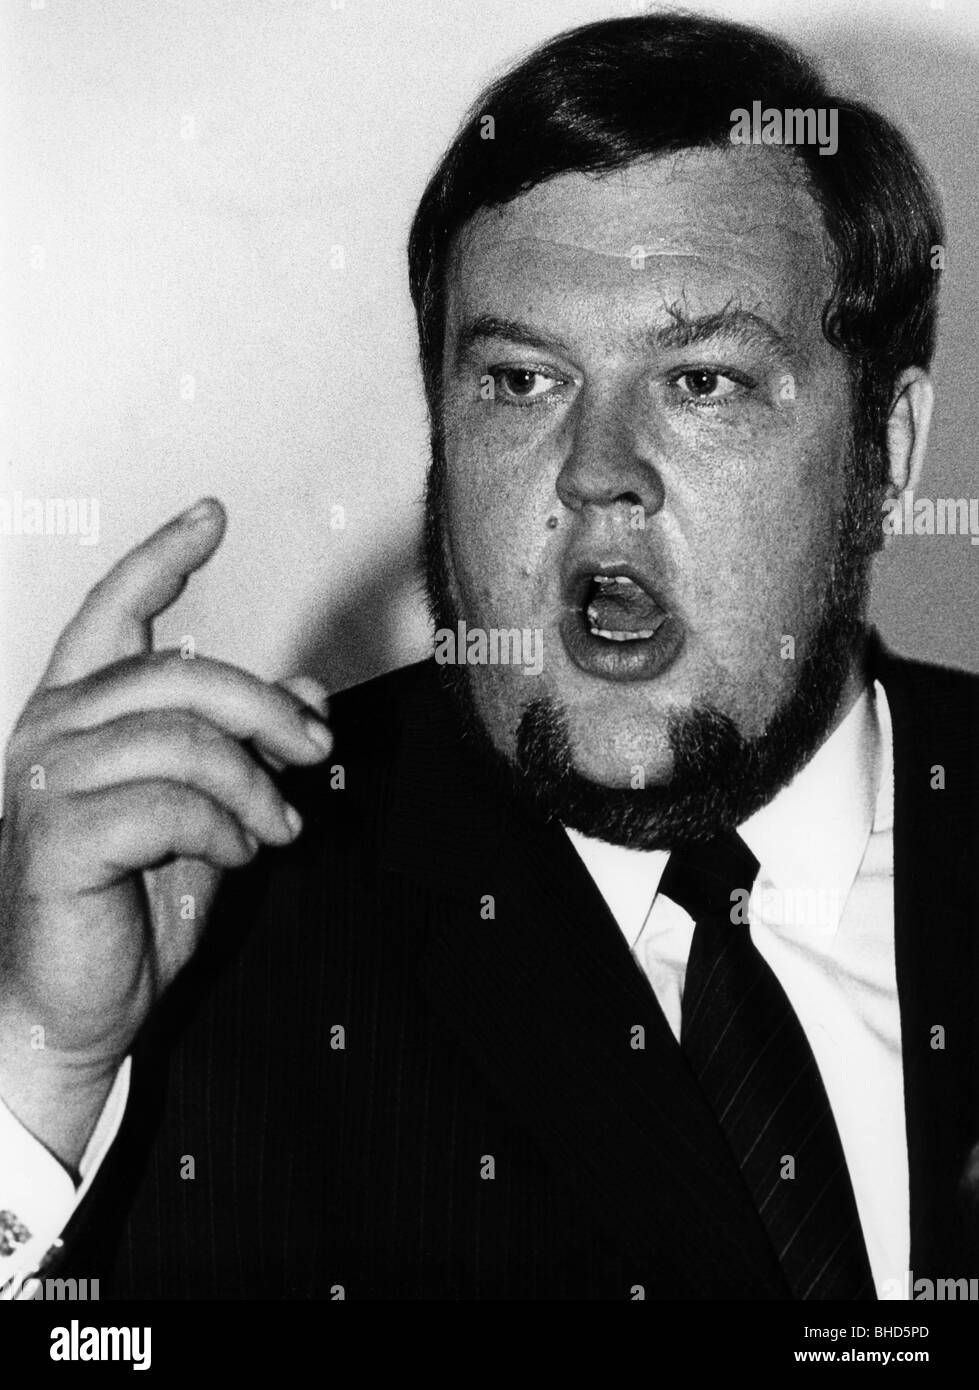 Hiersemann, Karl-Heinz, 17.8.1944 - 15.7.1998, German politician (SPD), portrait, Loewenbraeukeller, Munich, 18.4.1985, Stock Photo